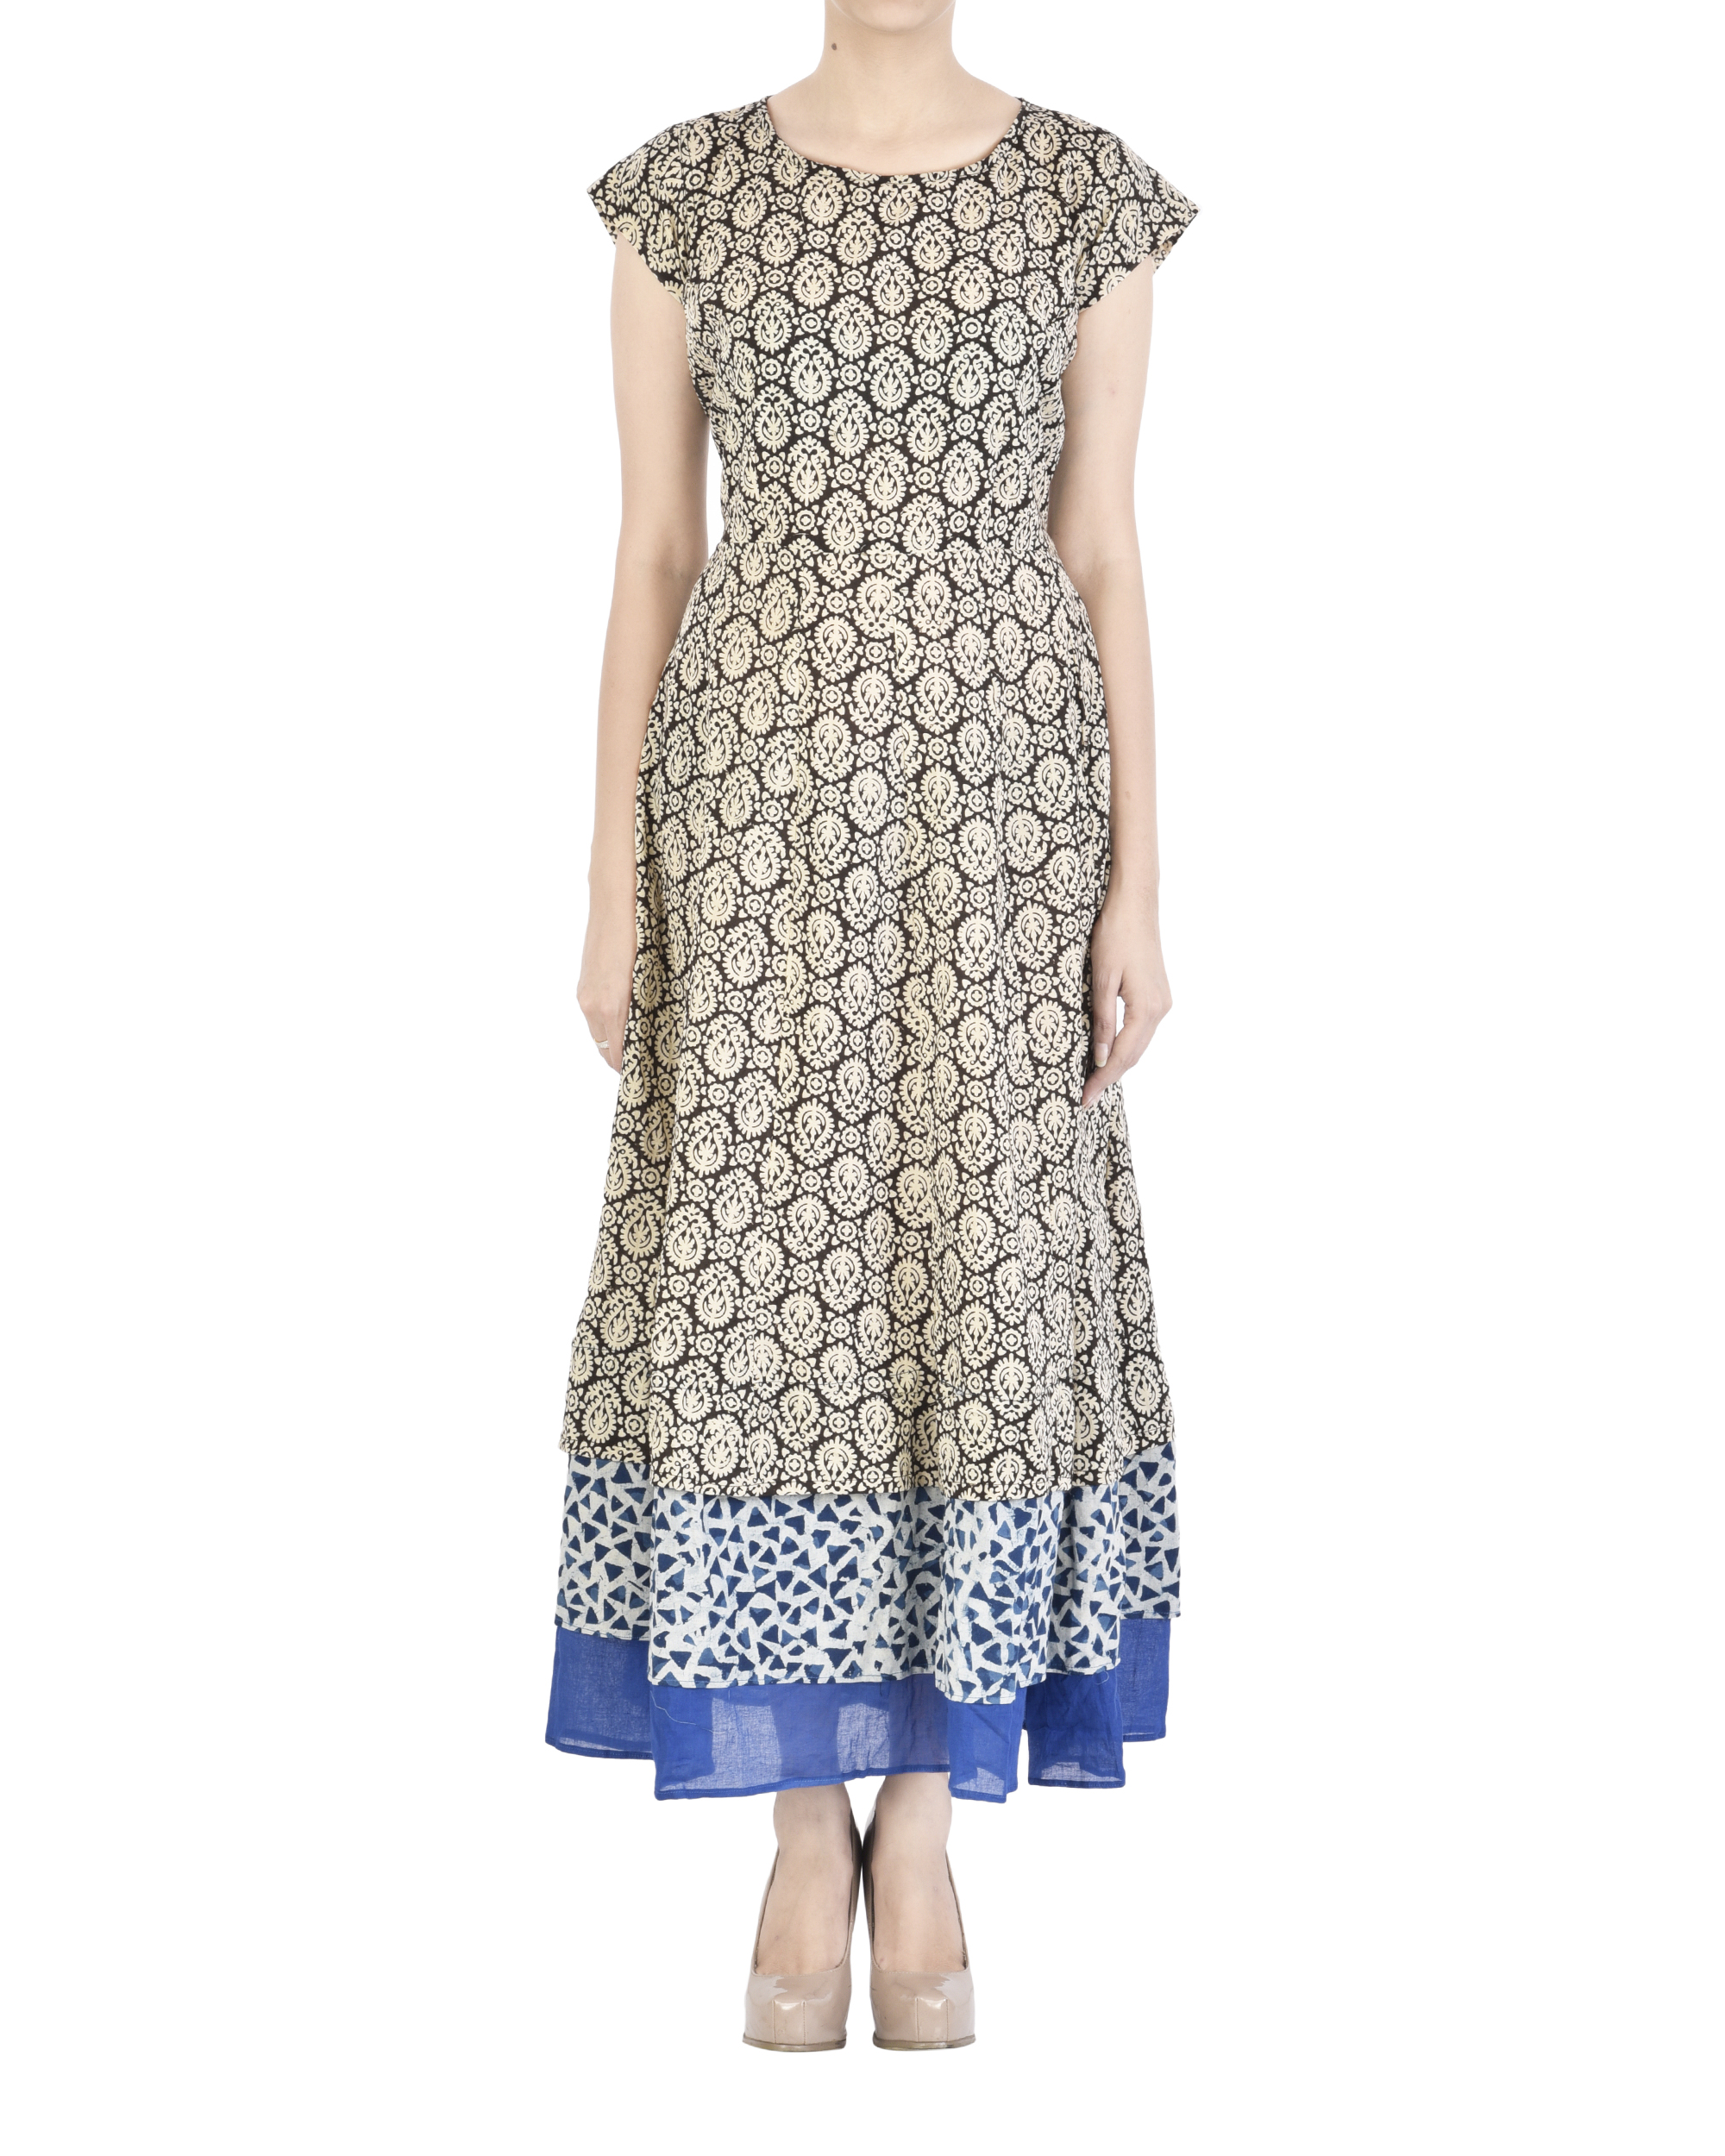 Sway layered block print dress by Miroir by Madhulika Jhawar | The ...